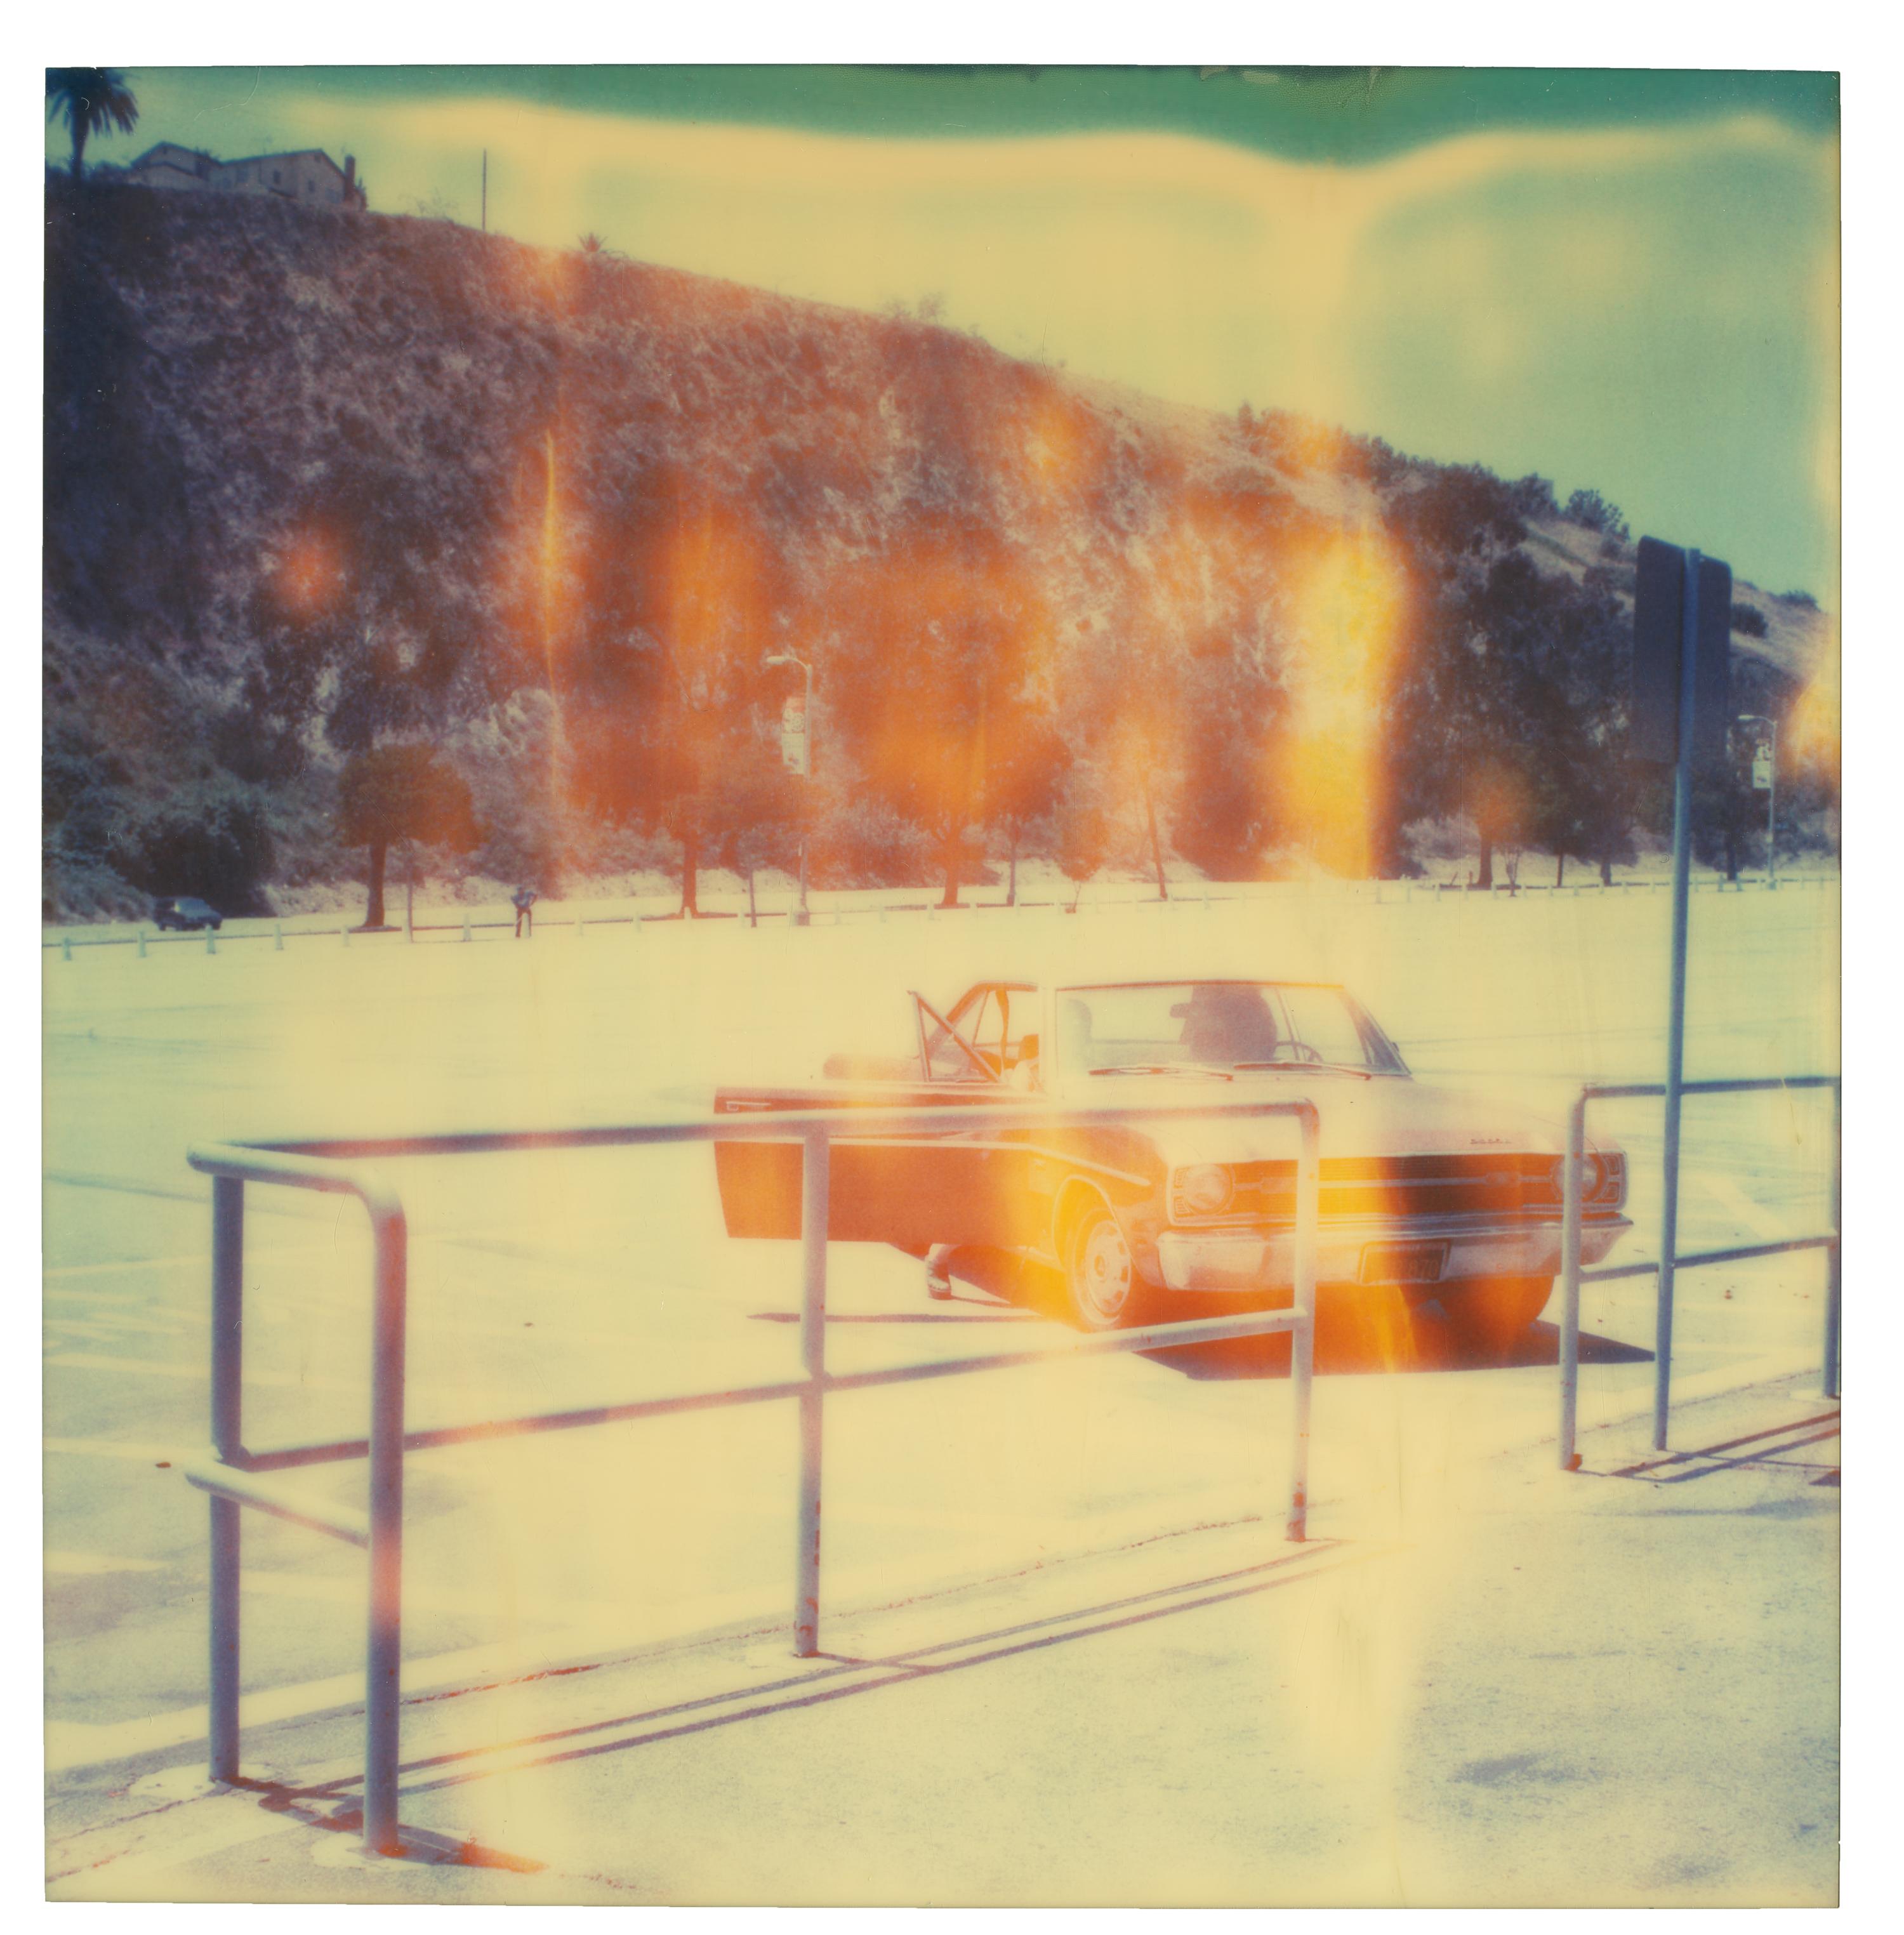 Landscape Photograph Stefanie Schneider - Le stade Dodger (The Last Picture Show) - 21e siècle, Polaroid, couleur